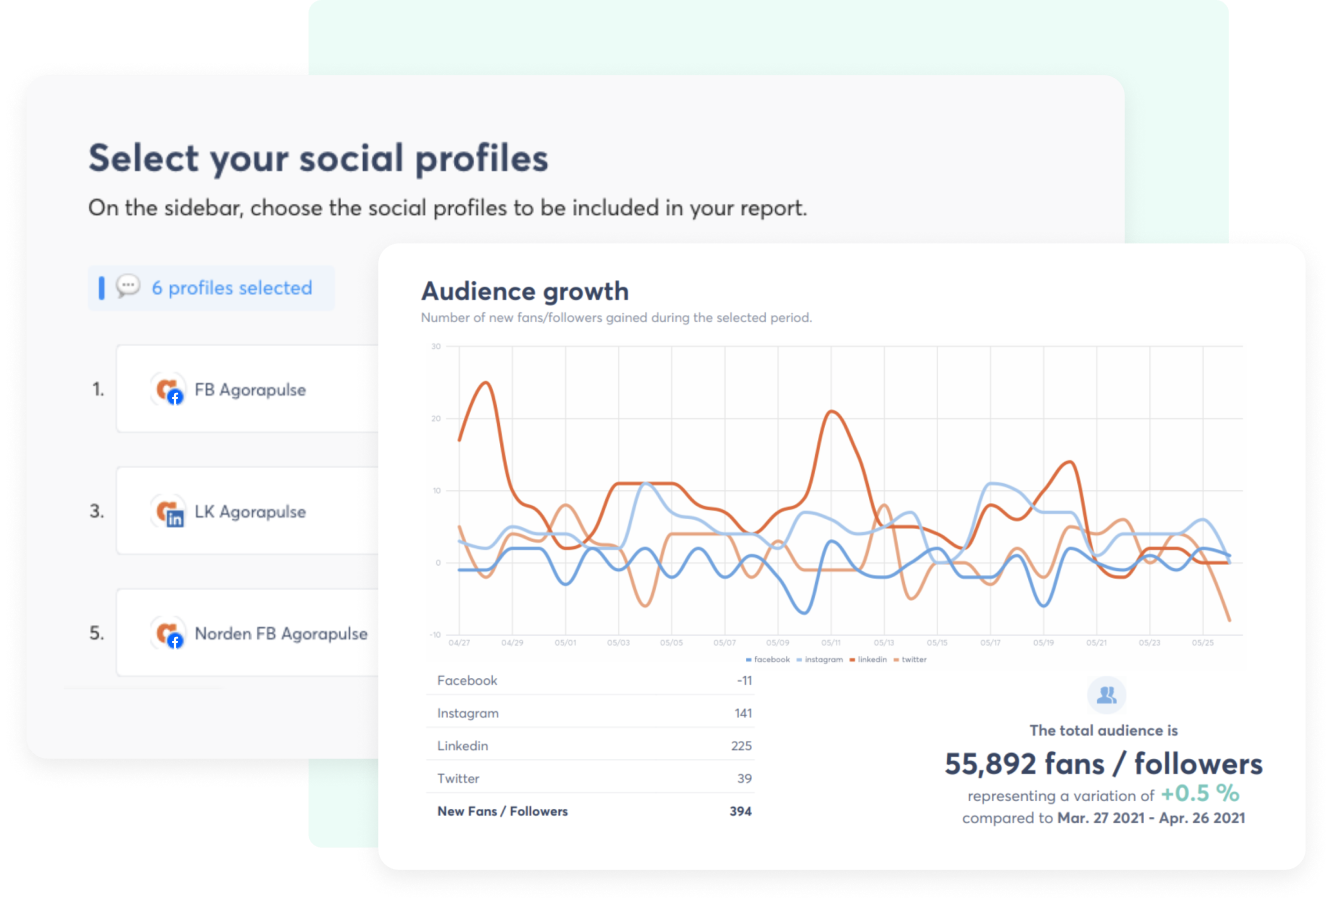 Tableau de bord analytique présentant la sélection de six profils sociaux pour un rapport et un graphique linéaire de la croissance de l’audience sur Facebook, Instagram, LinkedIn et X(Twitter), avec les métriques du total de l’audience et des nouveaux abonnés affichés.